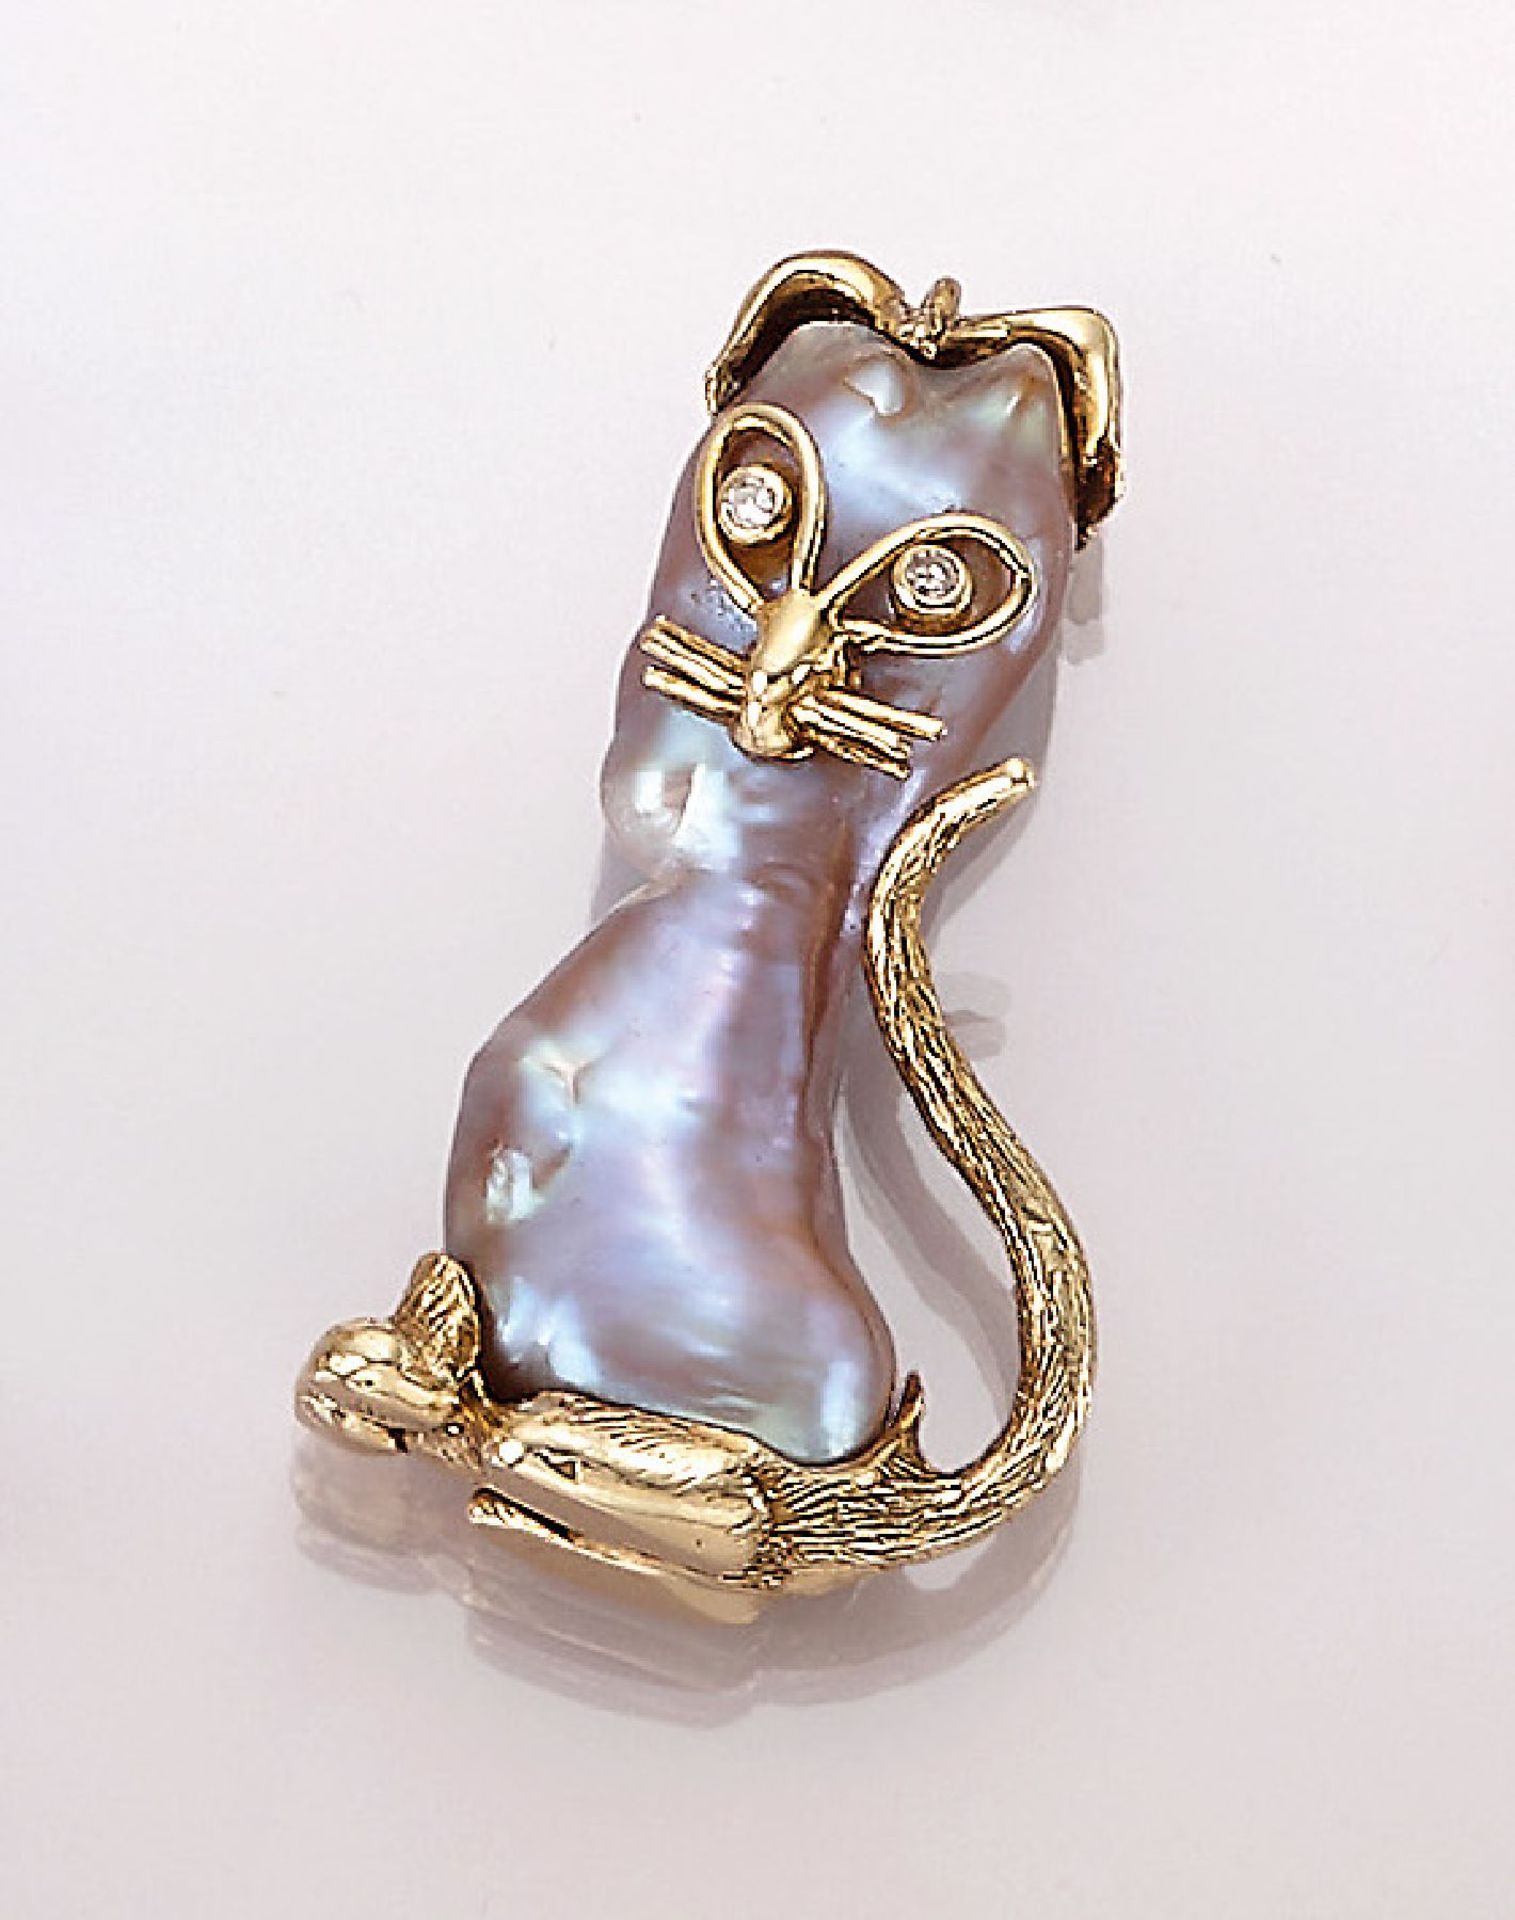 18 kt Gold Brosche "Katze" mit Zuchtperle und Brillanten, GG 750/000, Körper aus einer Zuchtperle,